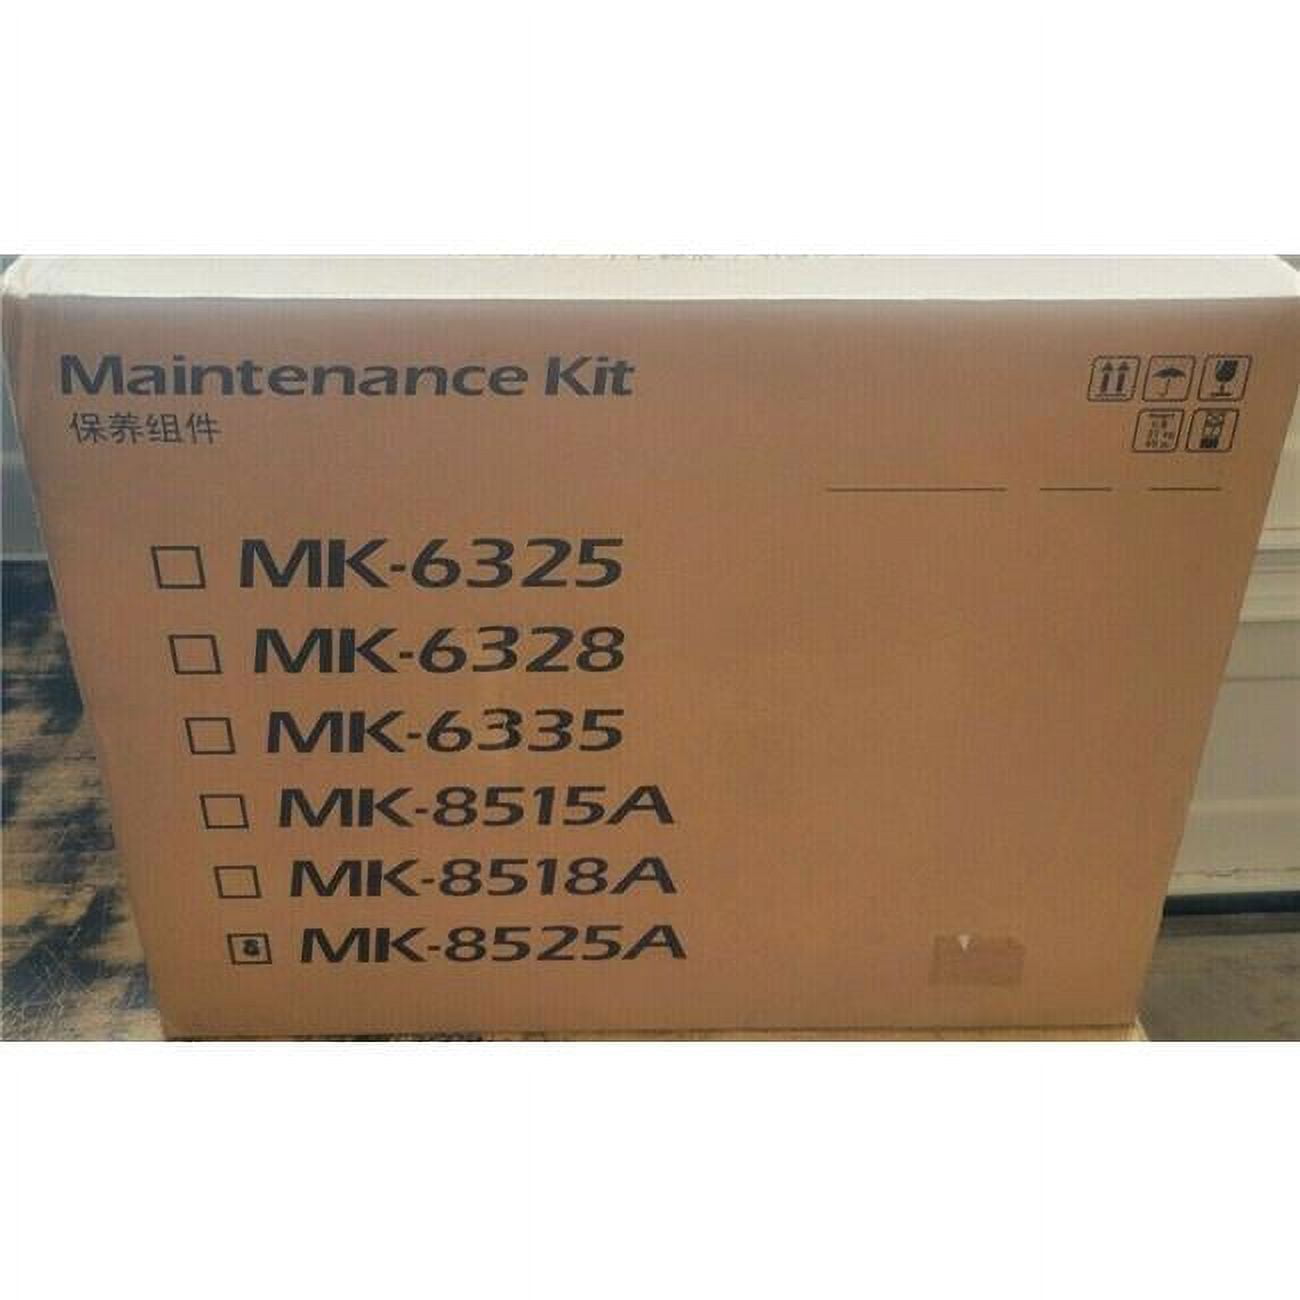 KYOMK8525A Taskalfa 4052CI MK8525A Maintenance Kit -  KYOCERA